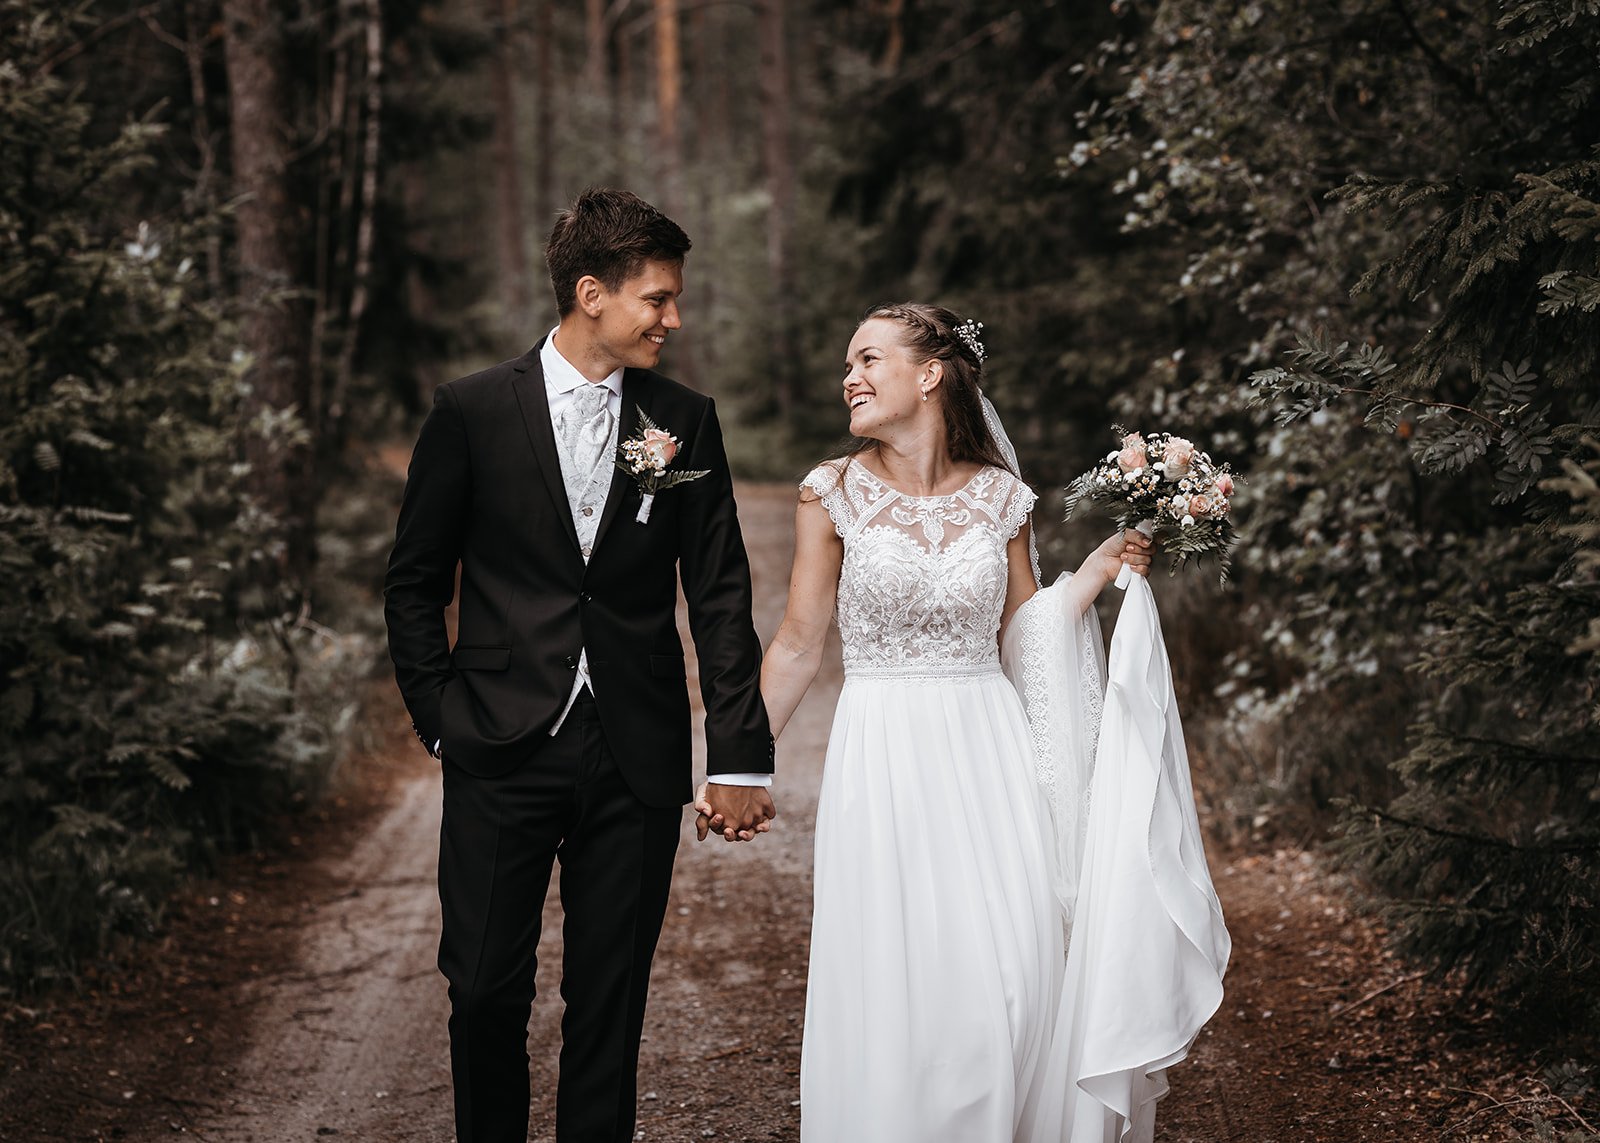 På skogstur under fotograferingen bryllup Birkeland i romantisk brudekjole